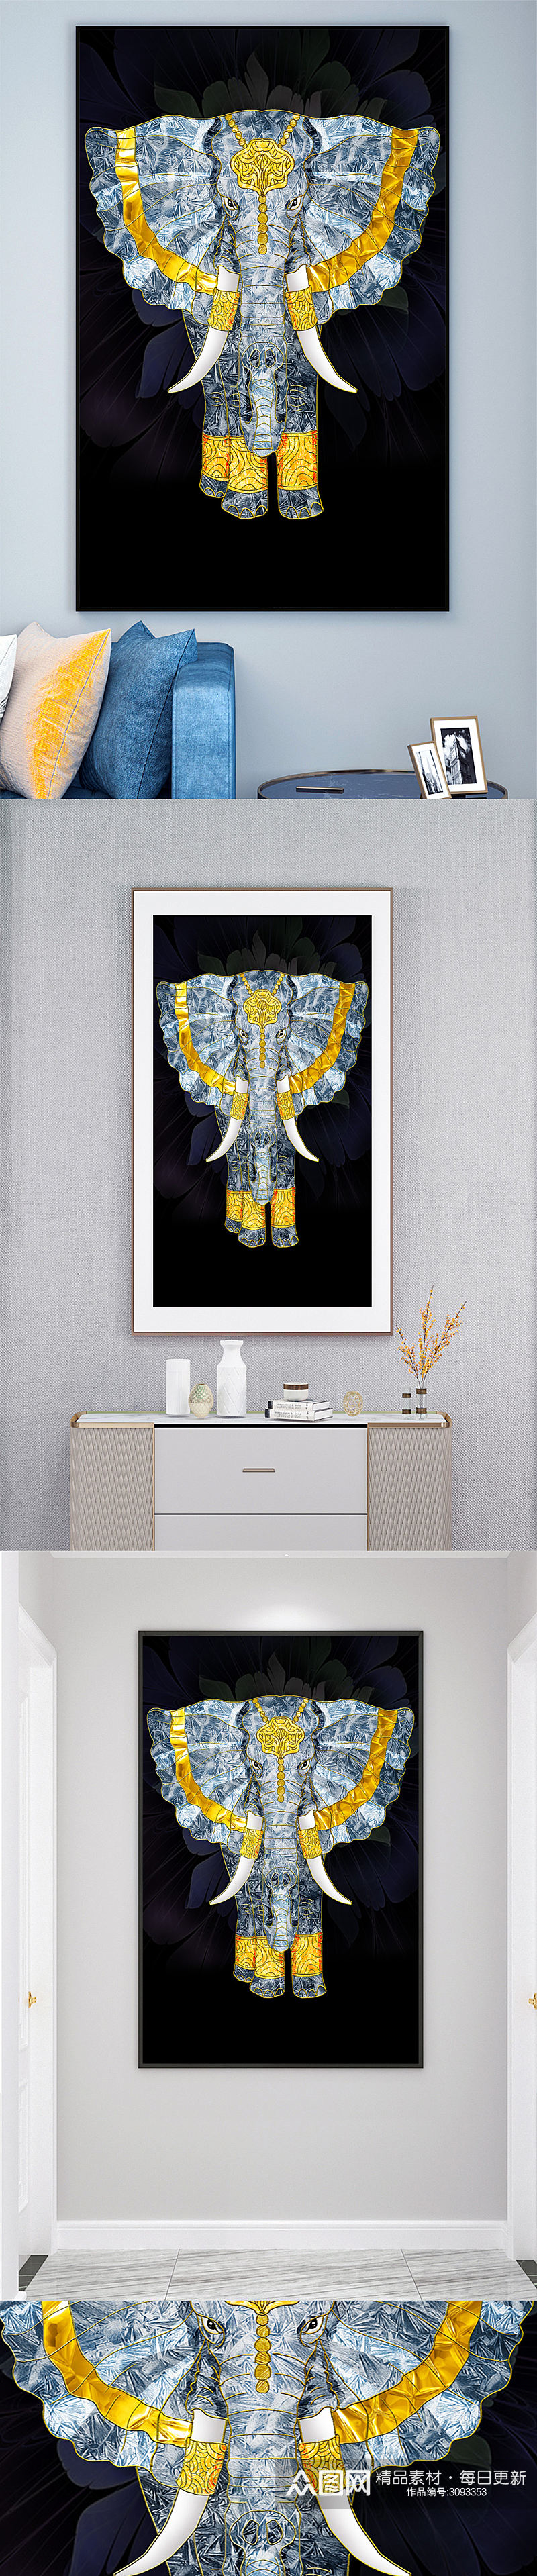 印度大象壁画装饰画素材